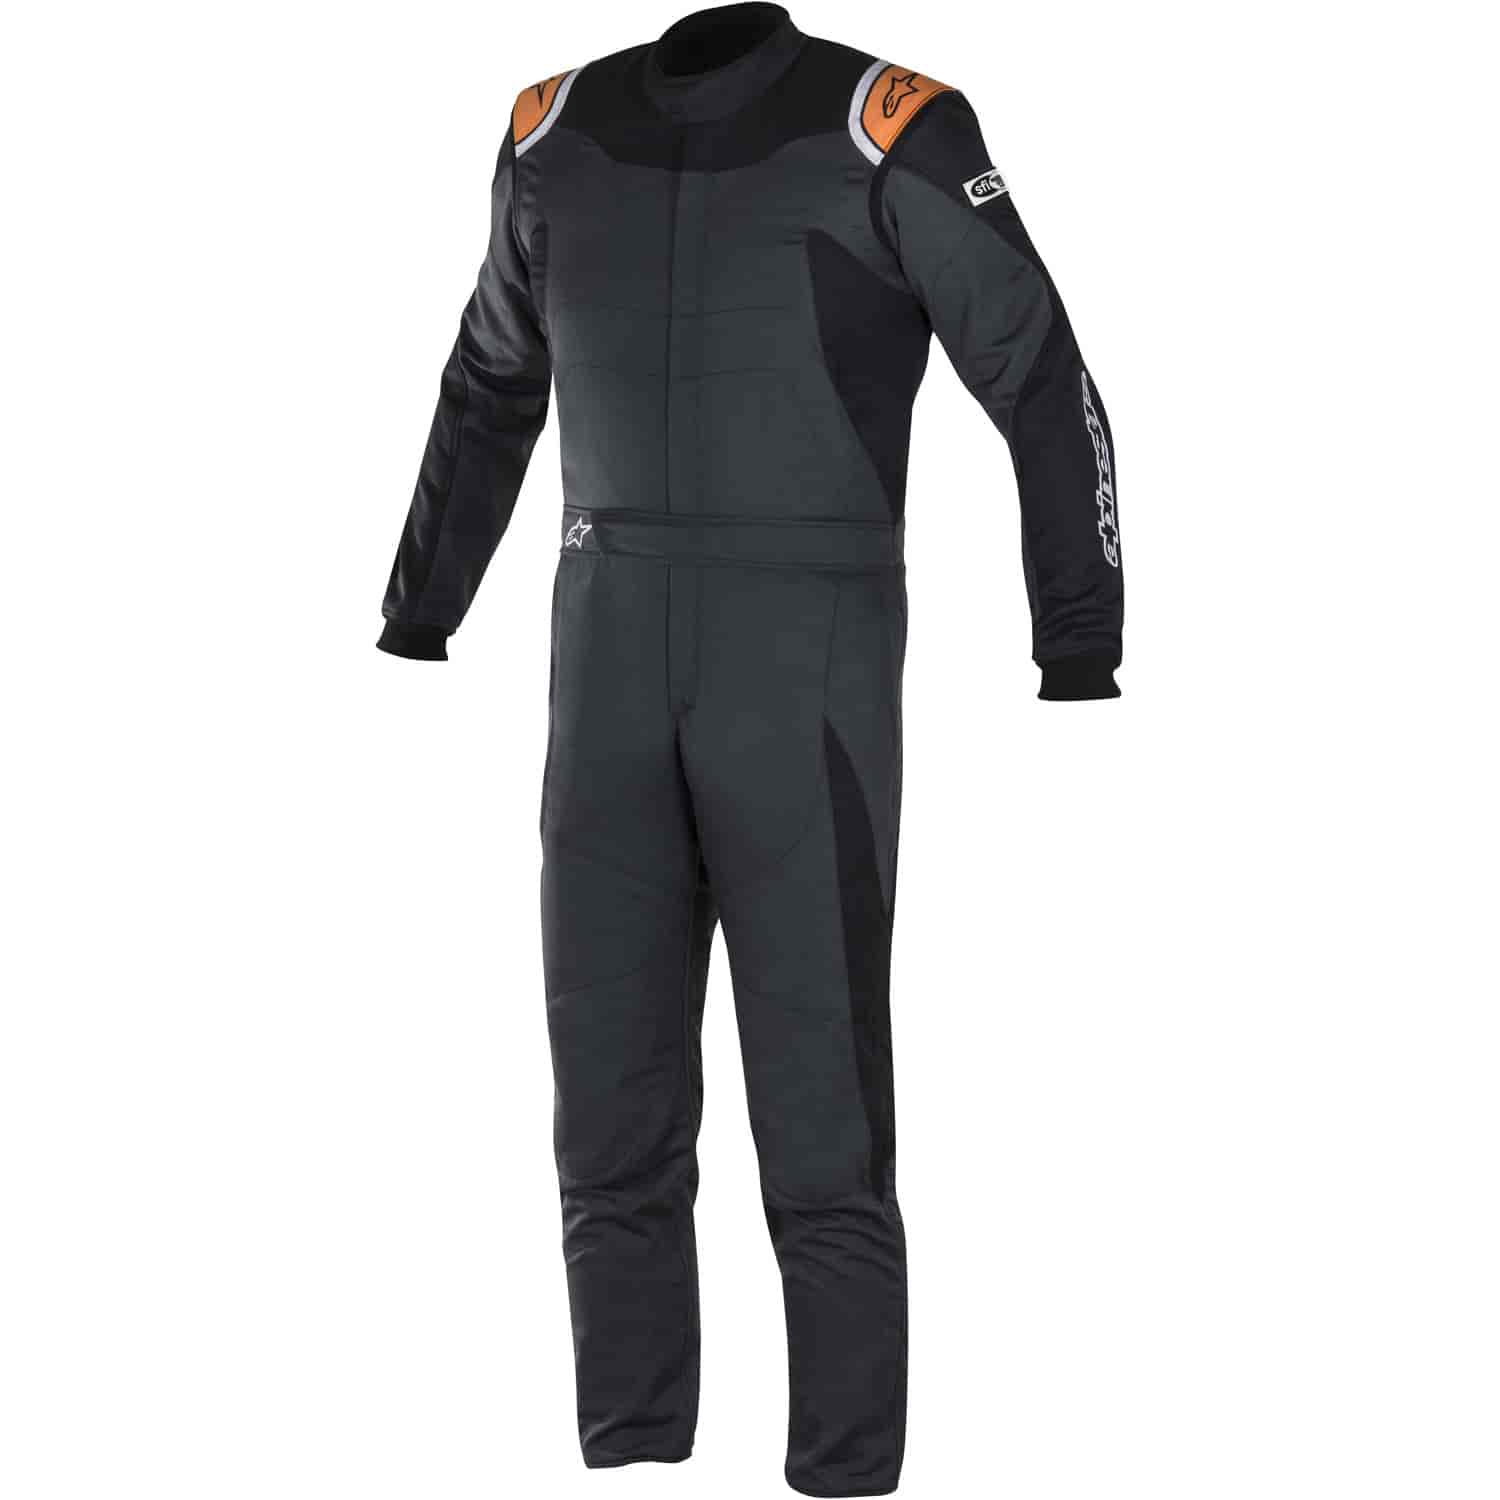 GP Race Suit Anthracite/Black/Orange SFI 3.2A/5